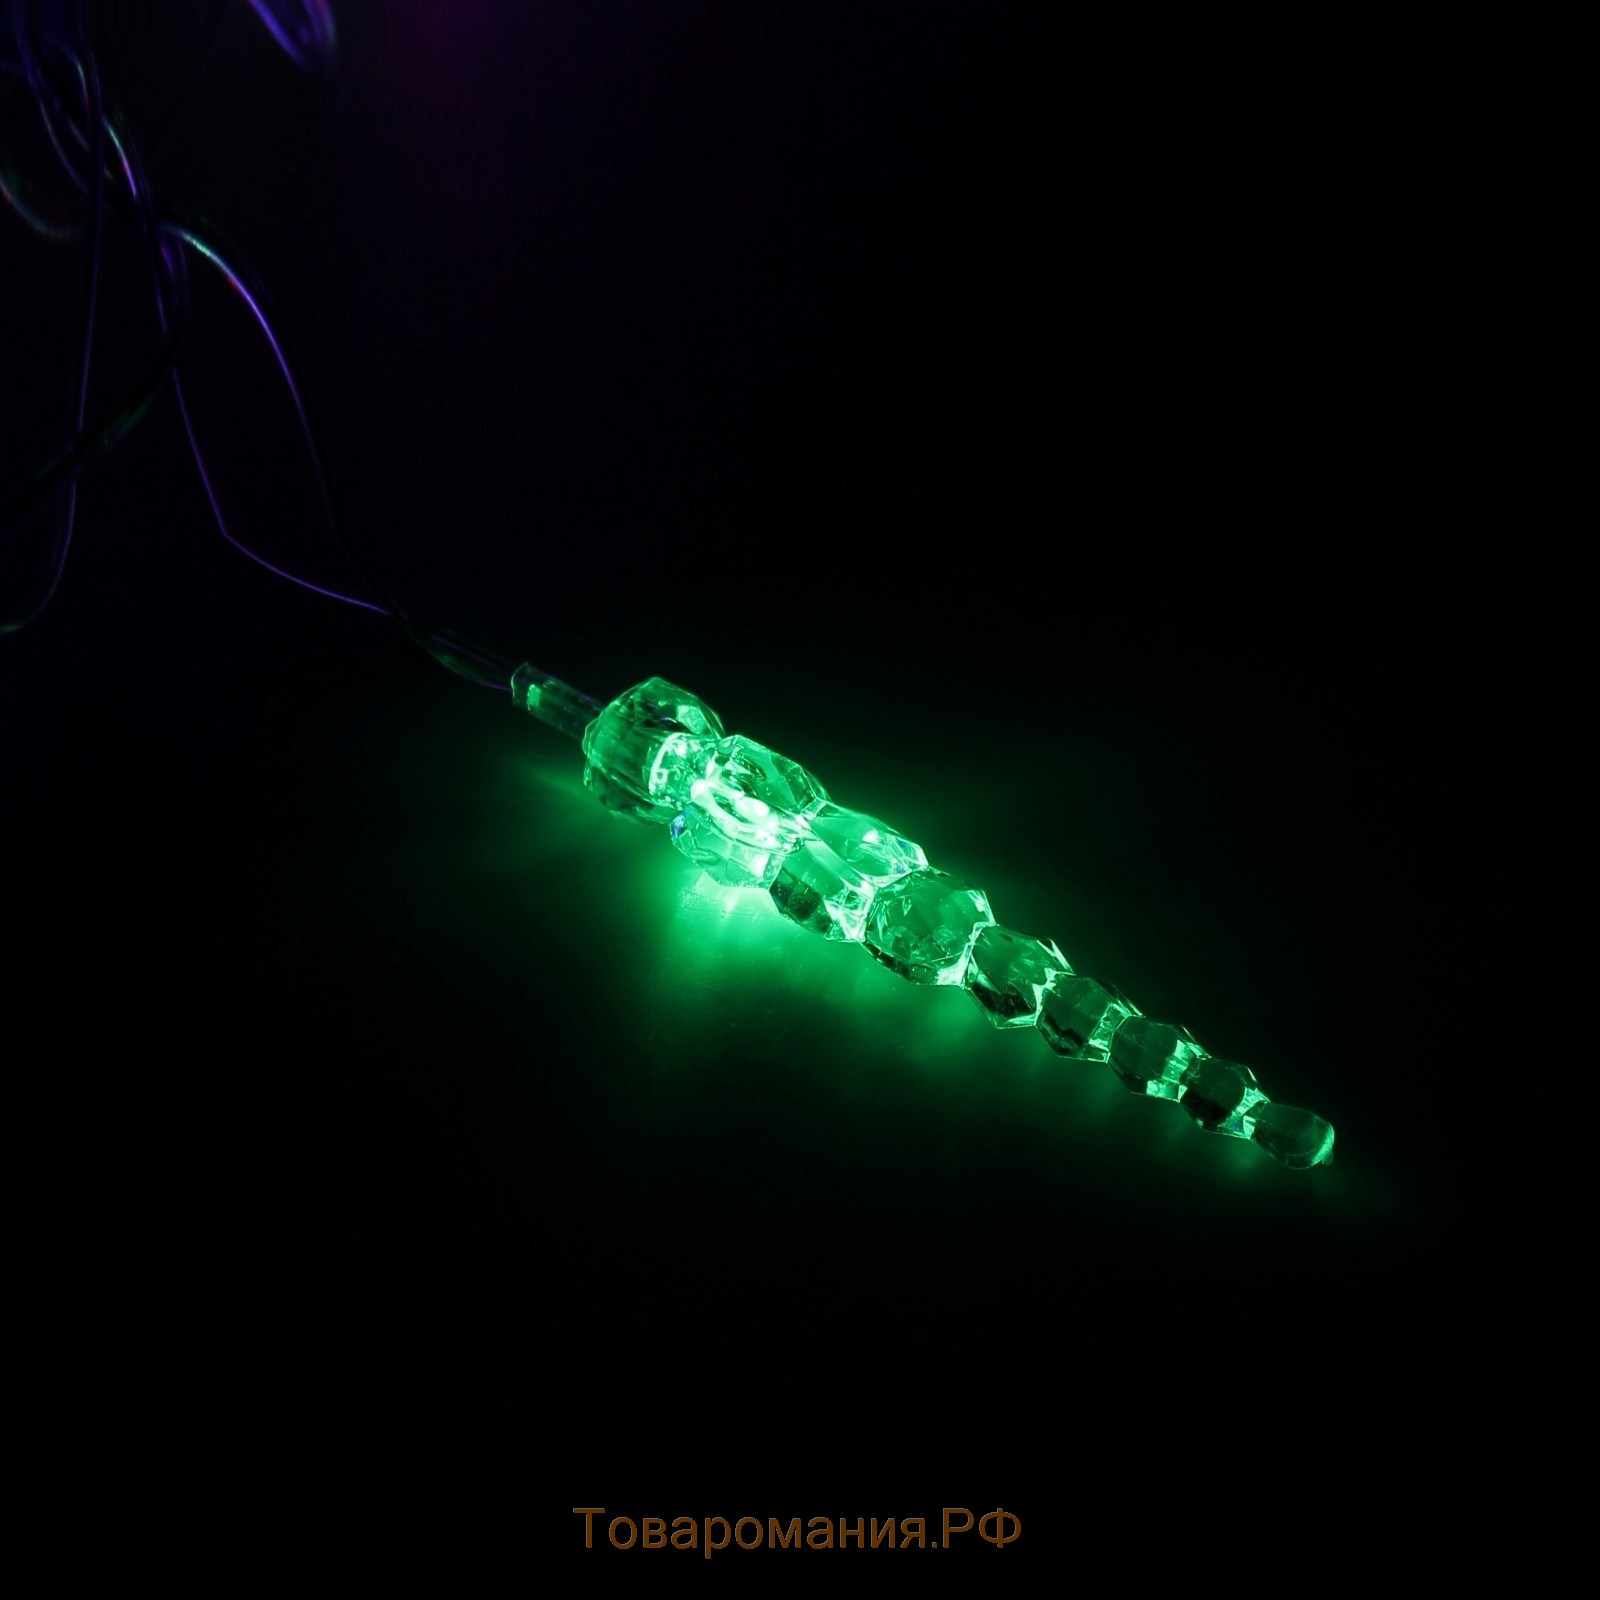 Гирлянда «Нить» 5 м с насадками «Сосульки тающие», IP20, прозрачная нить, 20 LED, свечение мульти (RG/RB), мигание, 220 В